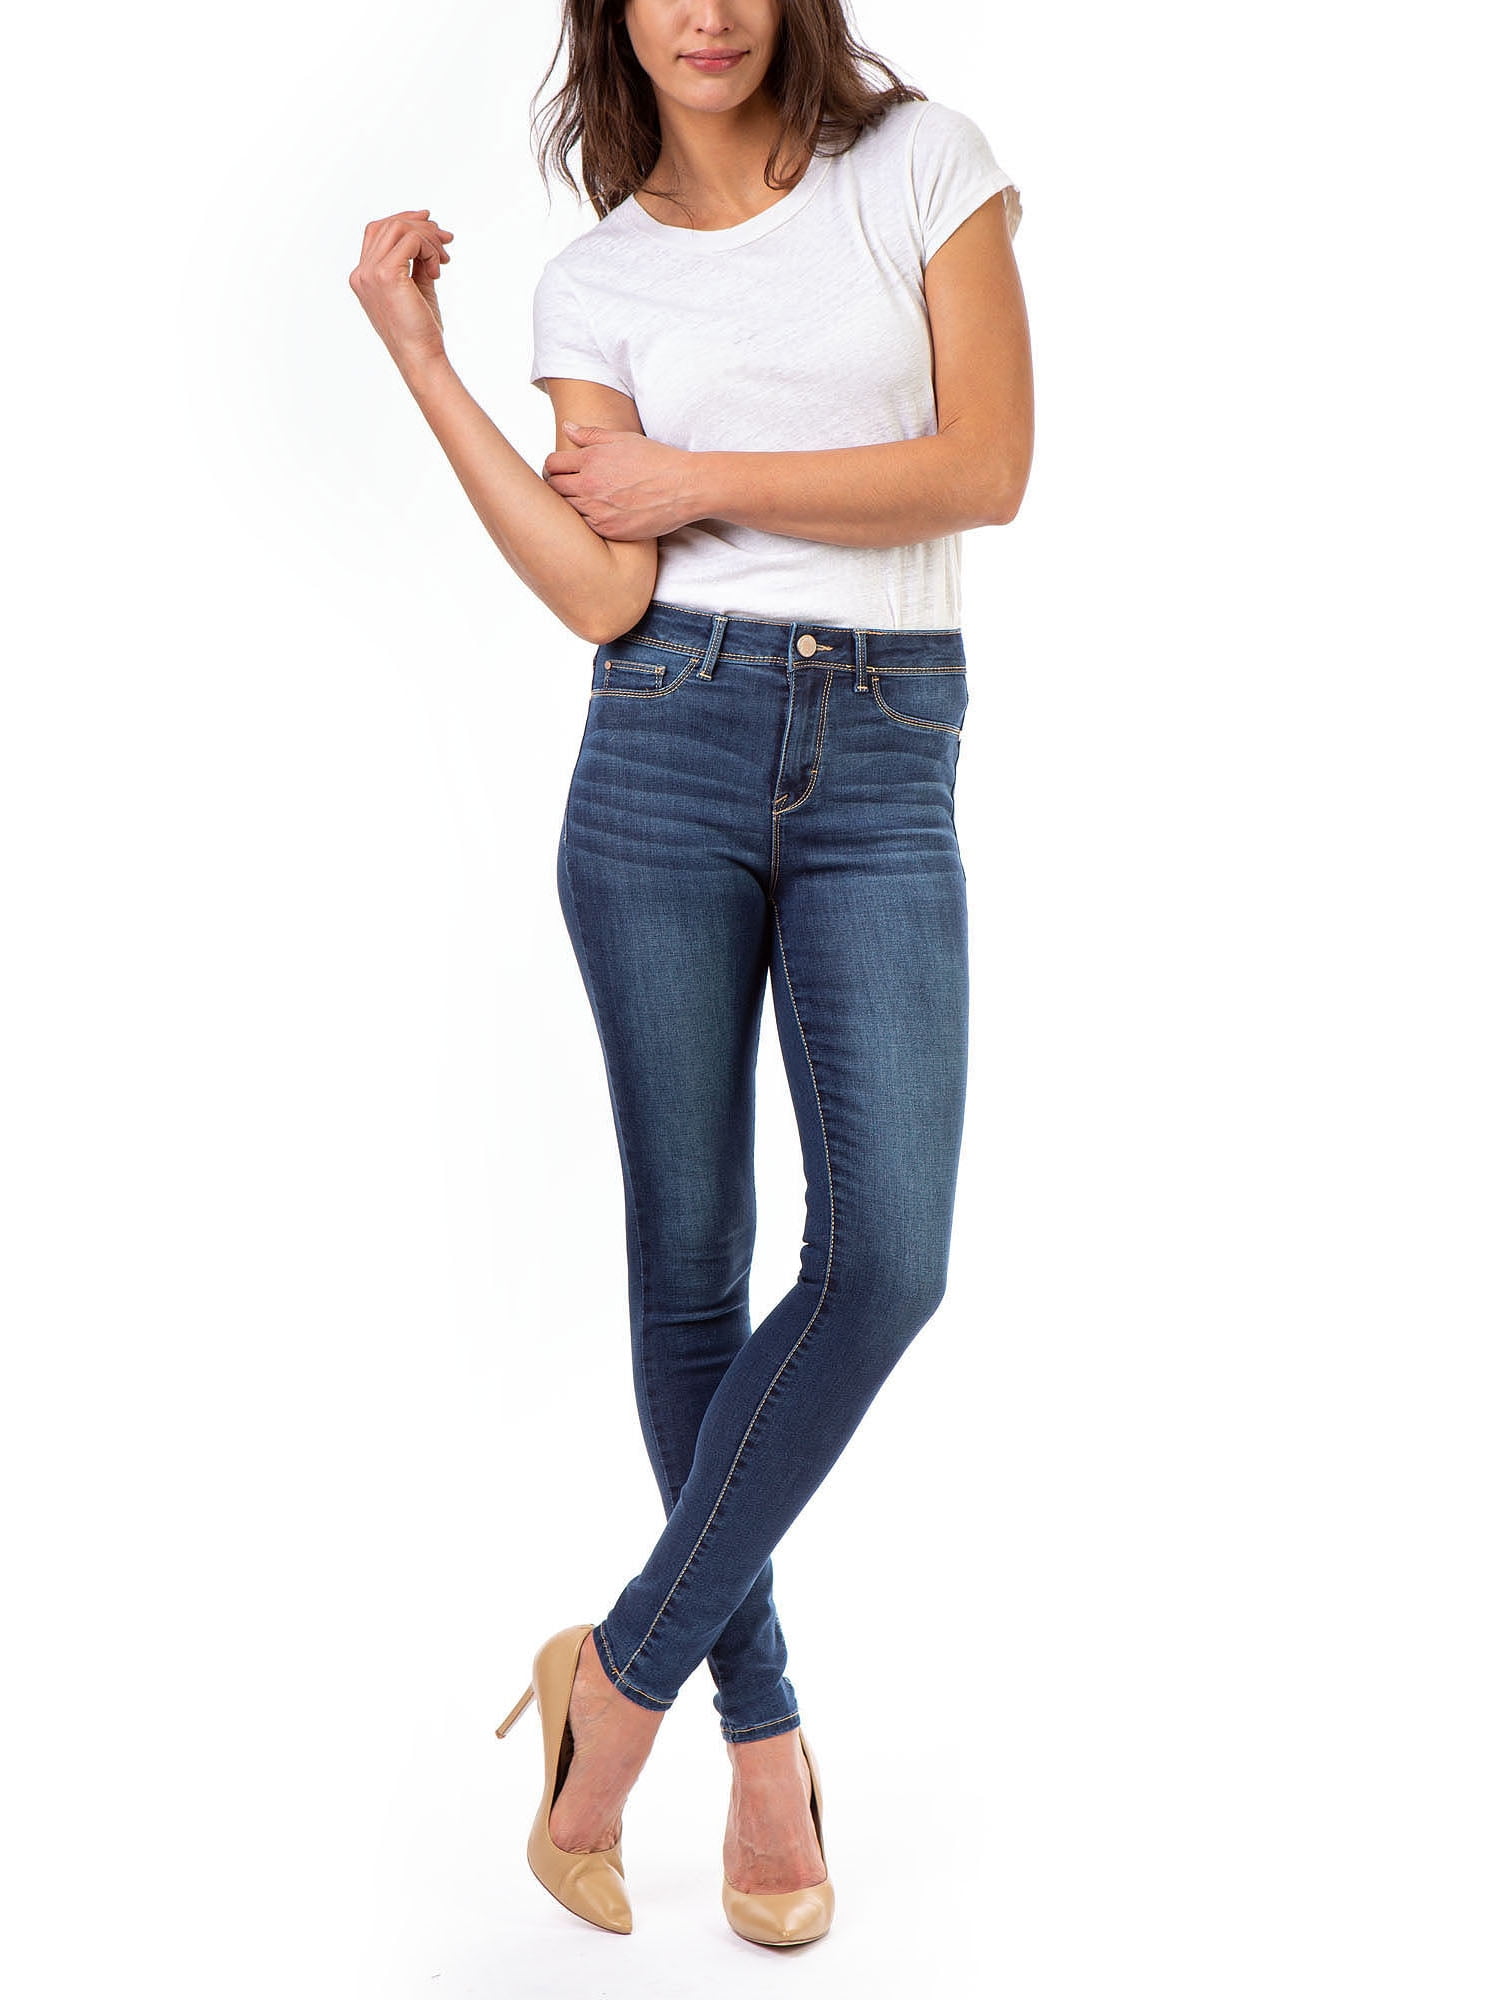 Calça Jeans Utilitária - Ready-to-Wear